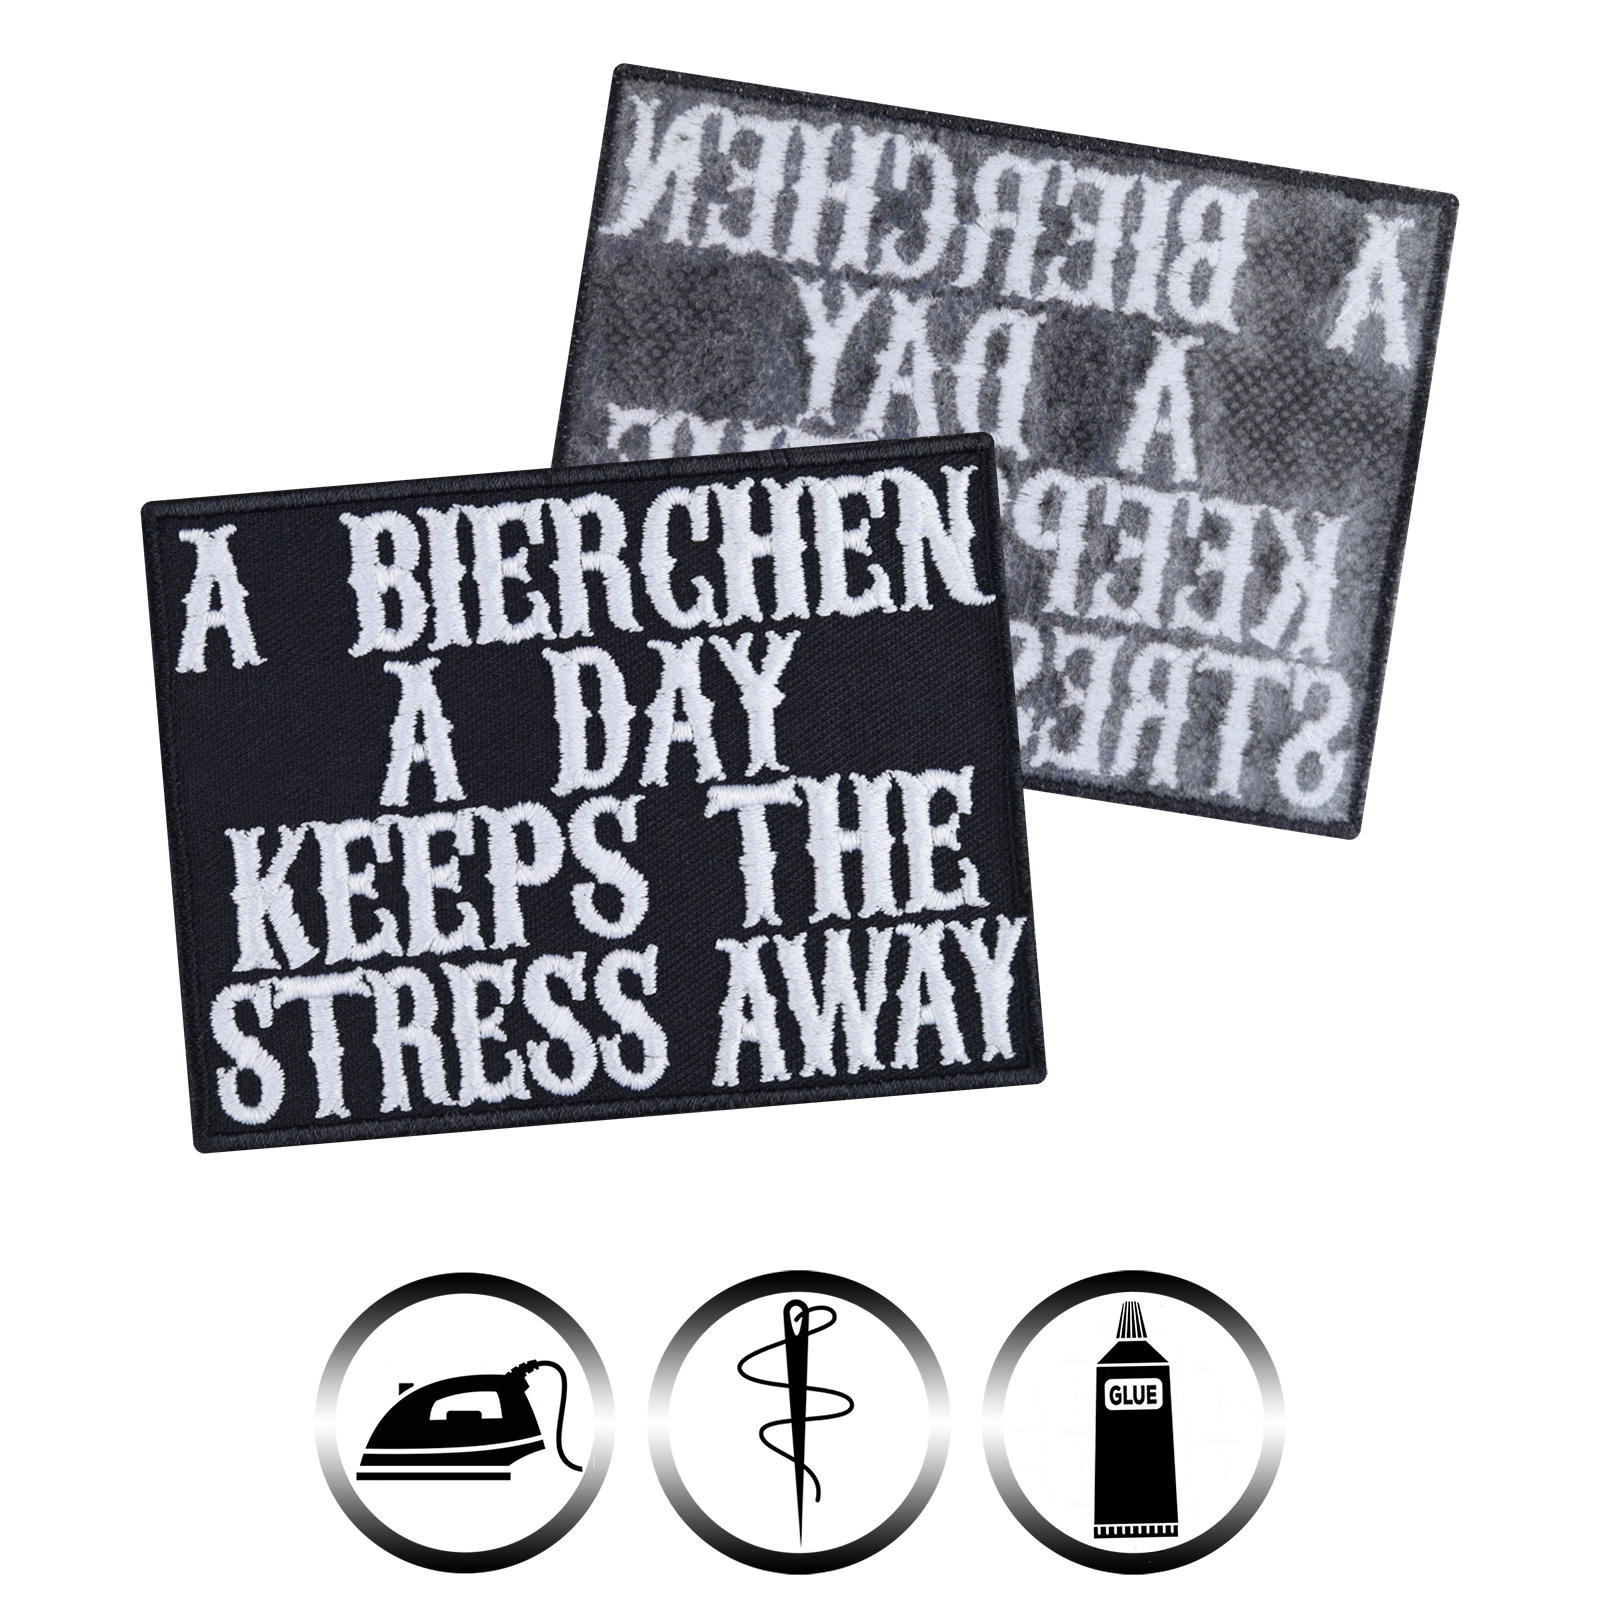 A Bierchen a day keeps the stress away - Patch